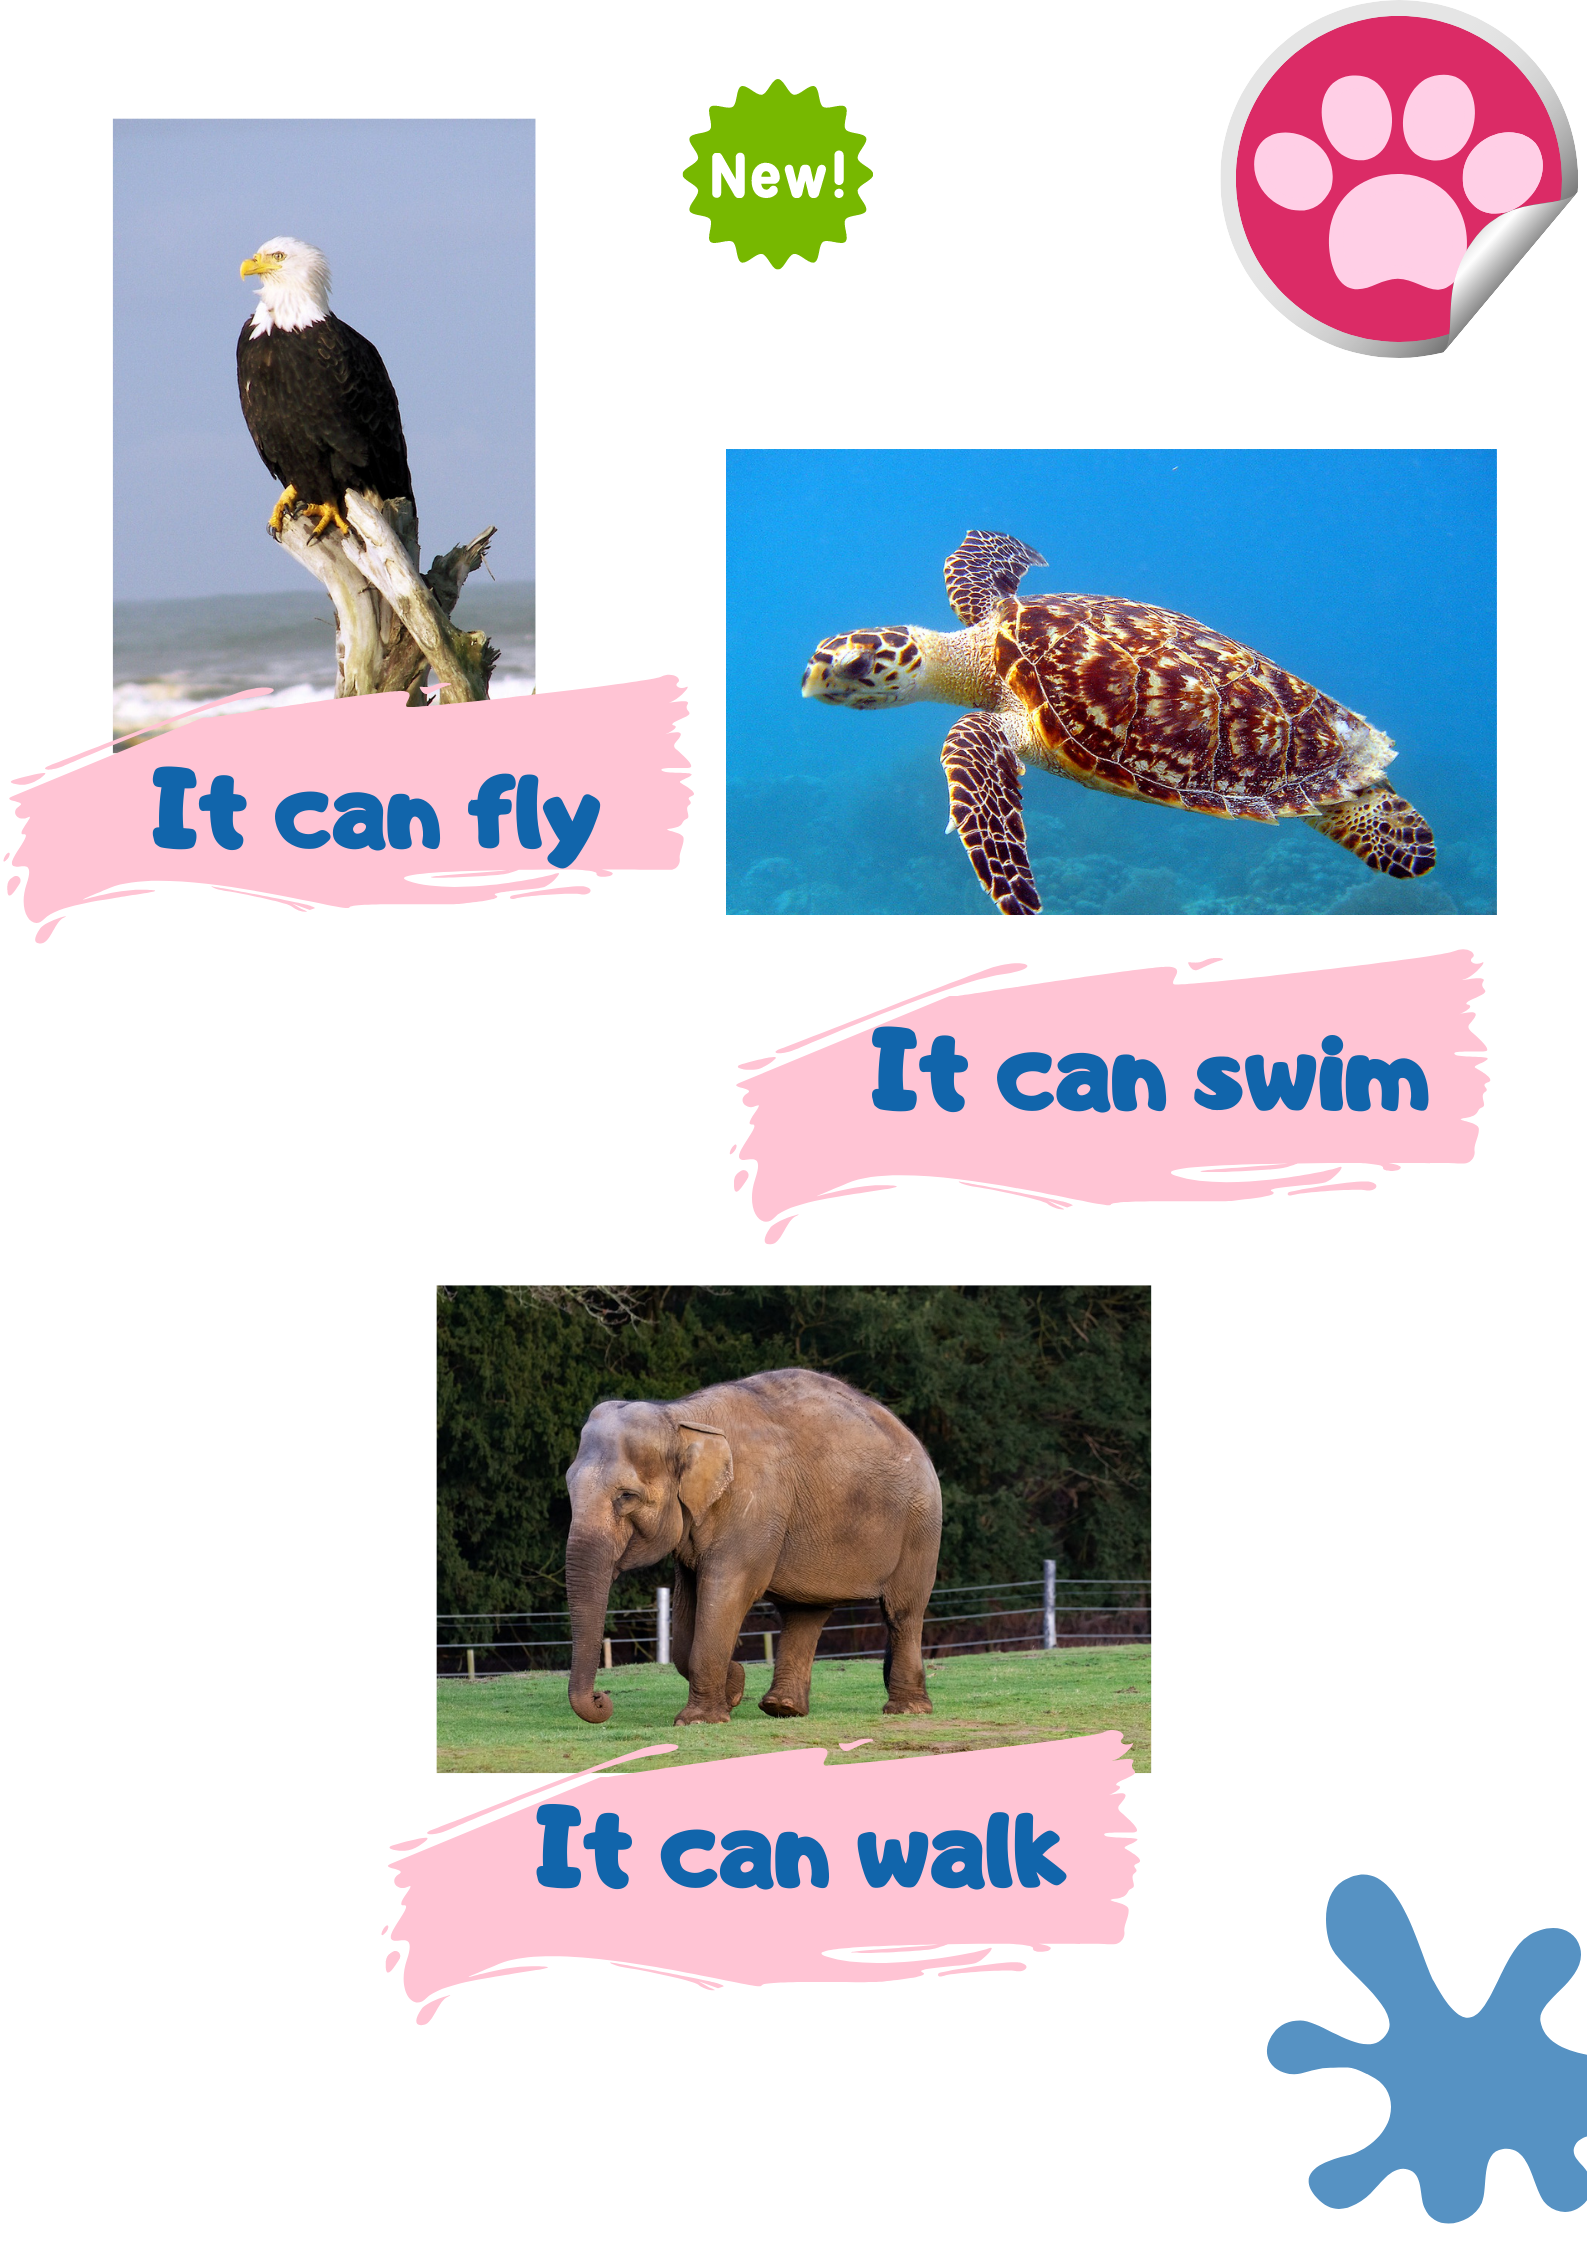 La imagen muestra un águila, una tortuga, y un elefante.